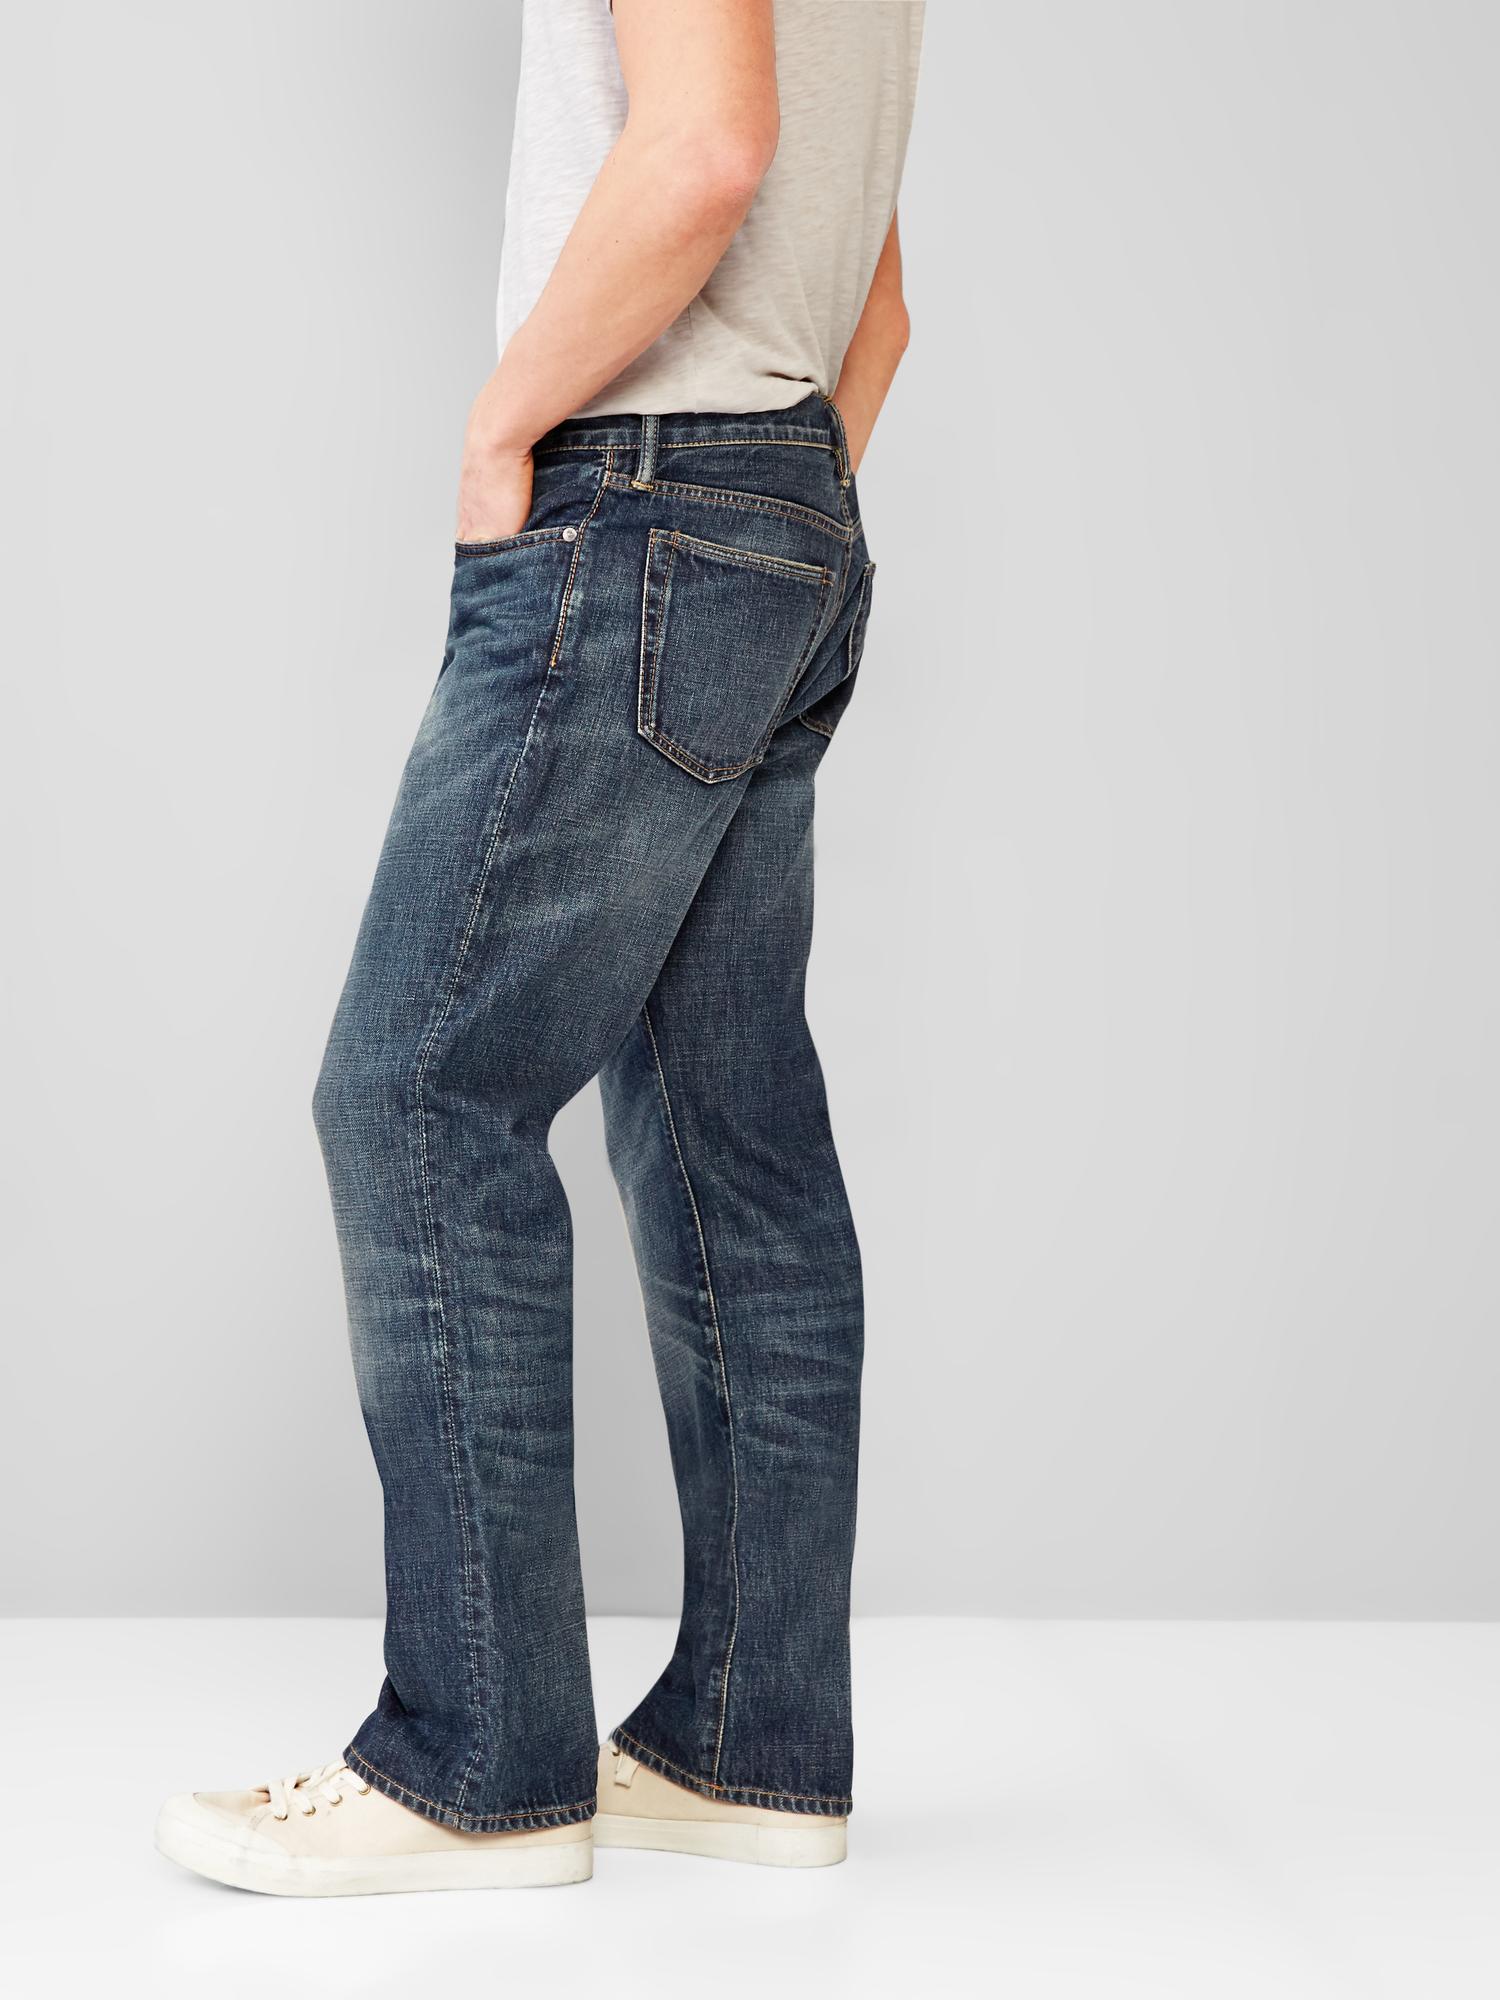 gap denim jeans mens